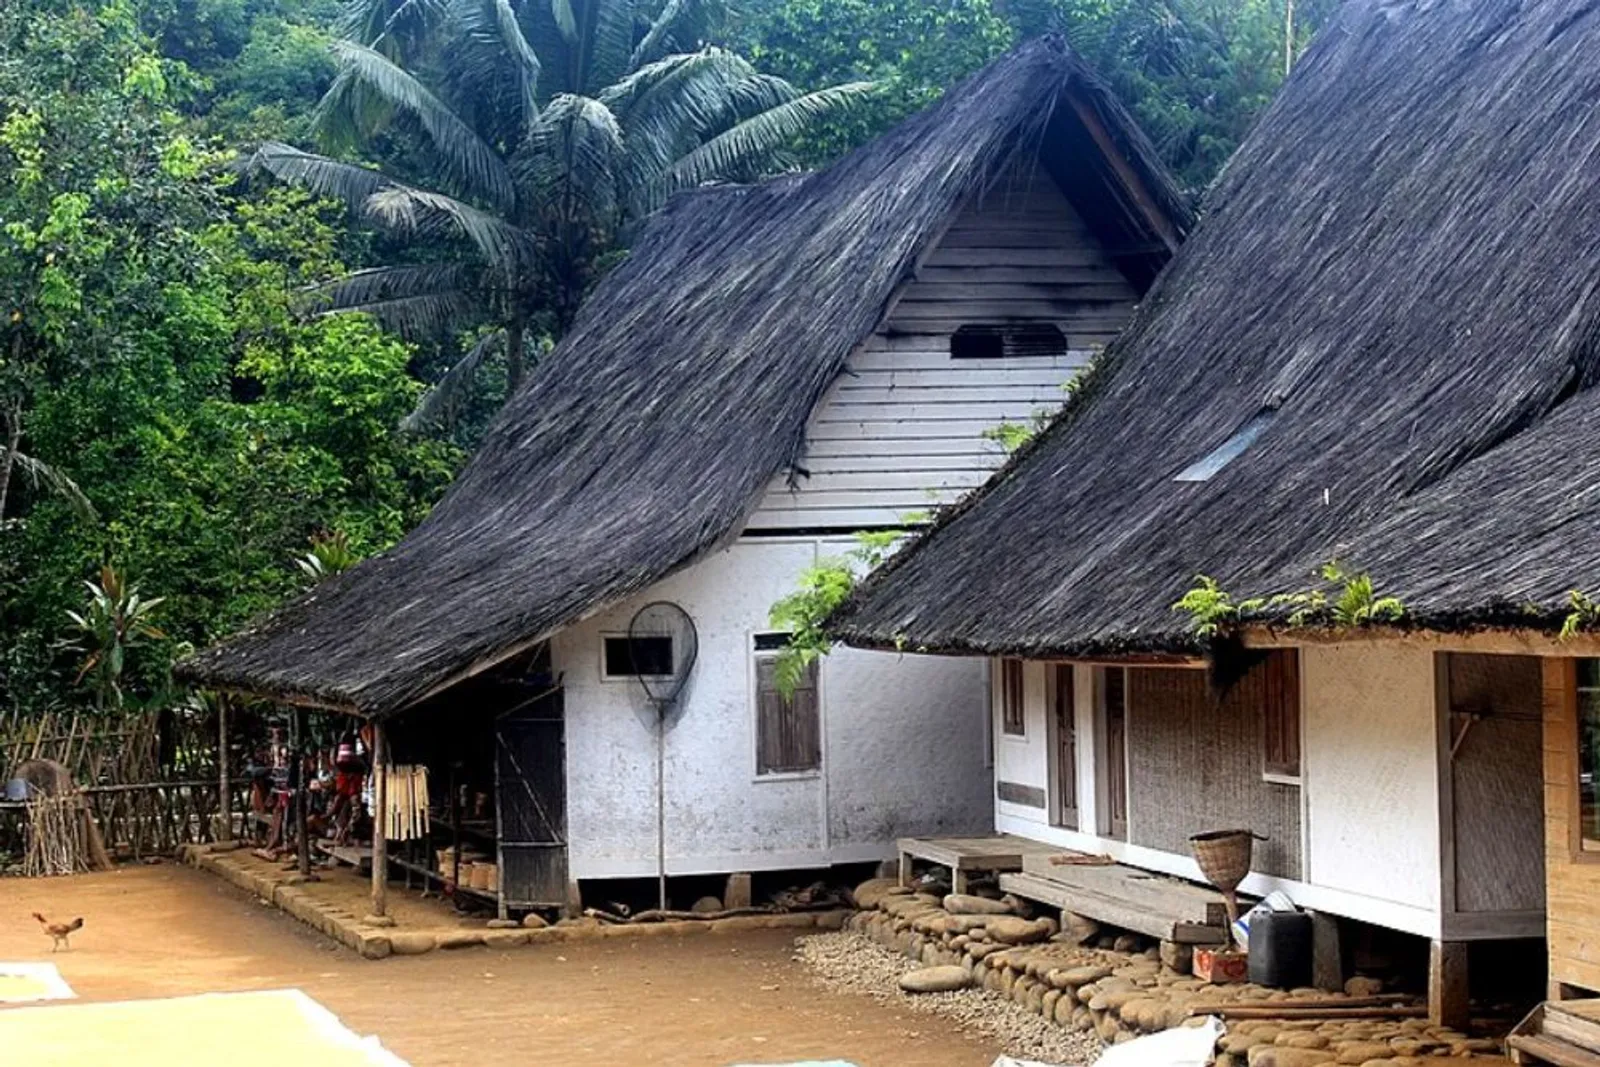 7 Rumah Adat Jawa Barat, Terinspirasi dari Binatang